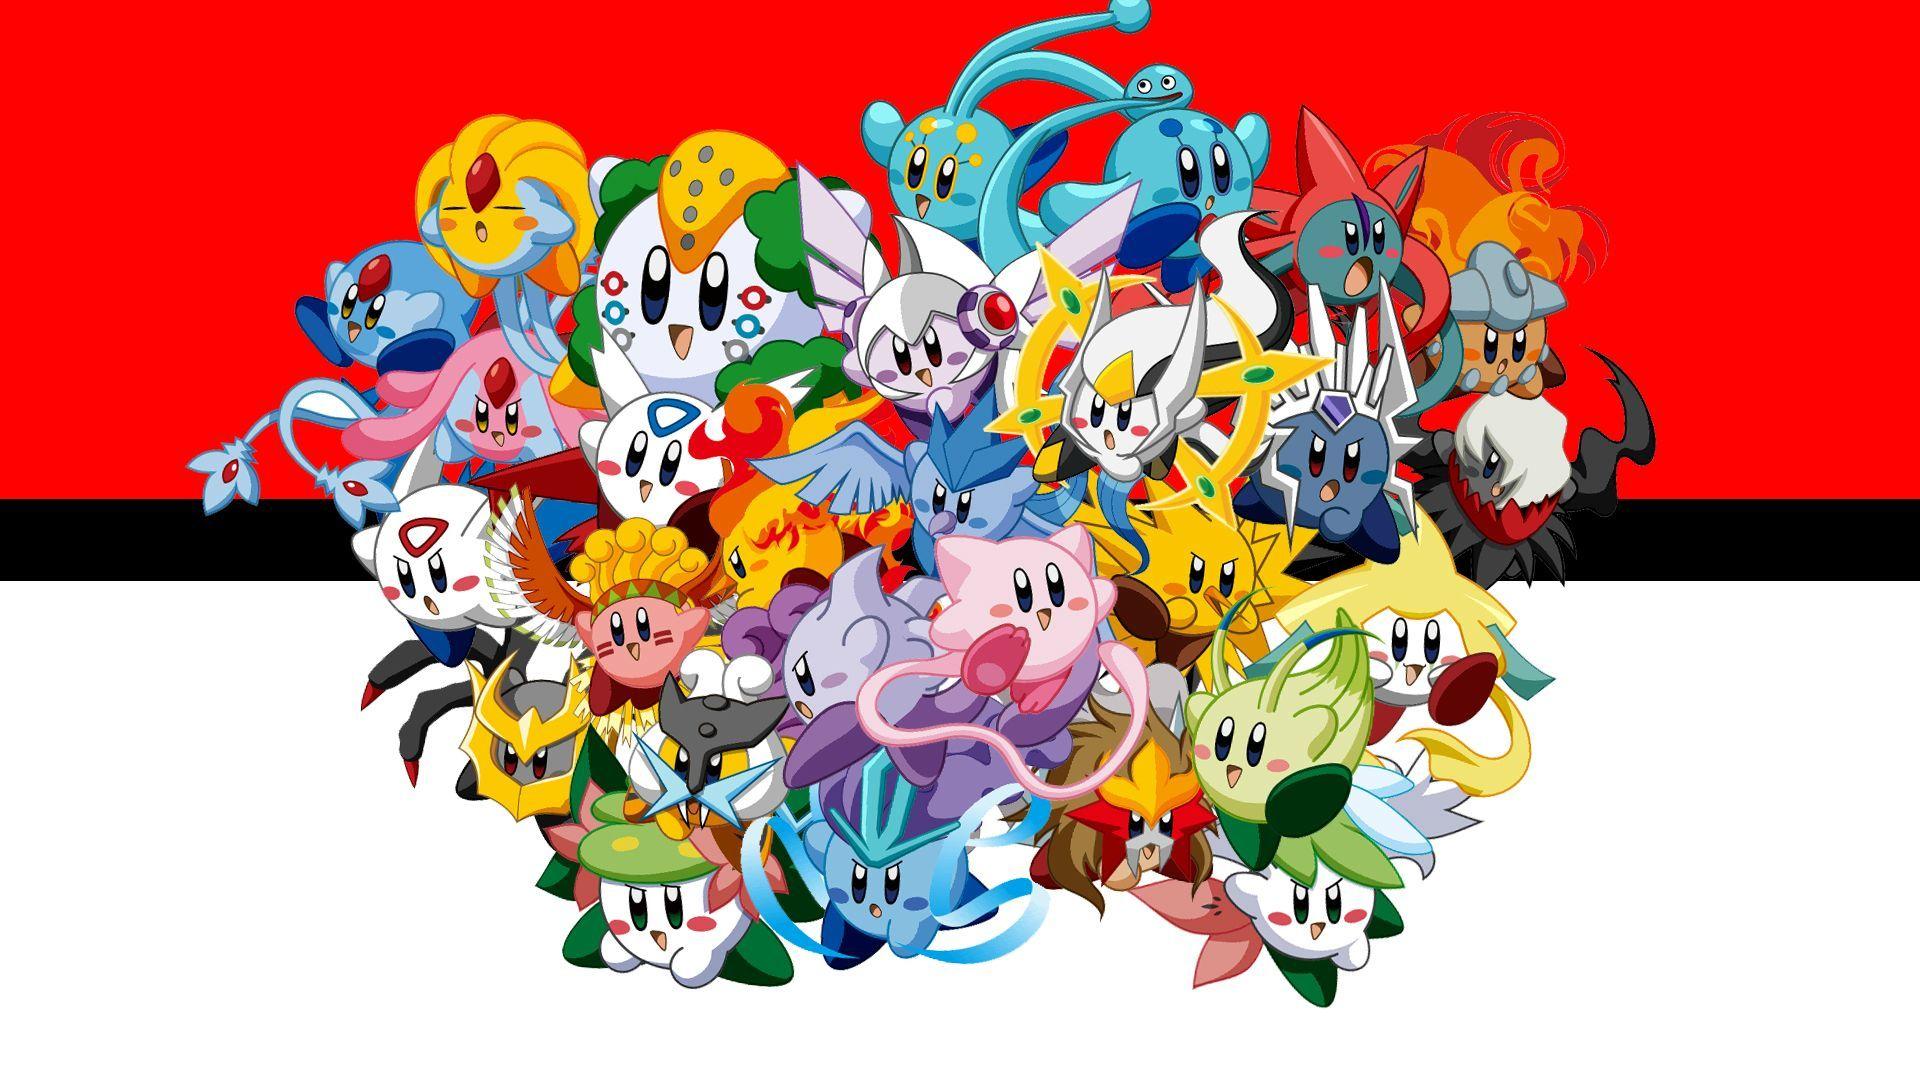 All Shiny Legendary Pokemon Wallpapers - Top Free All Shiny